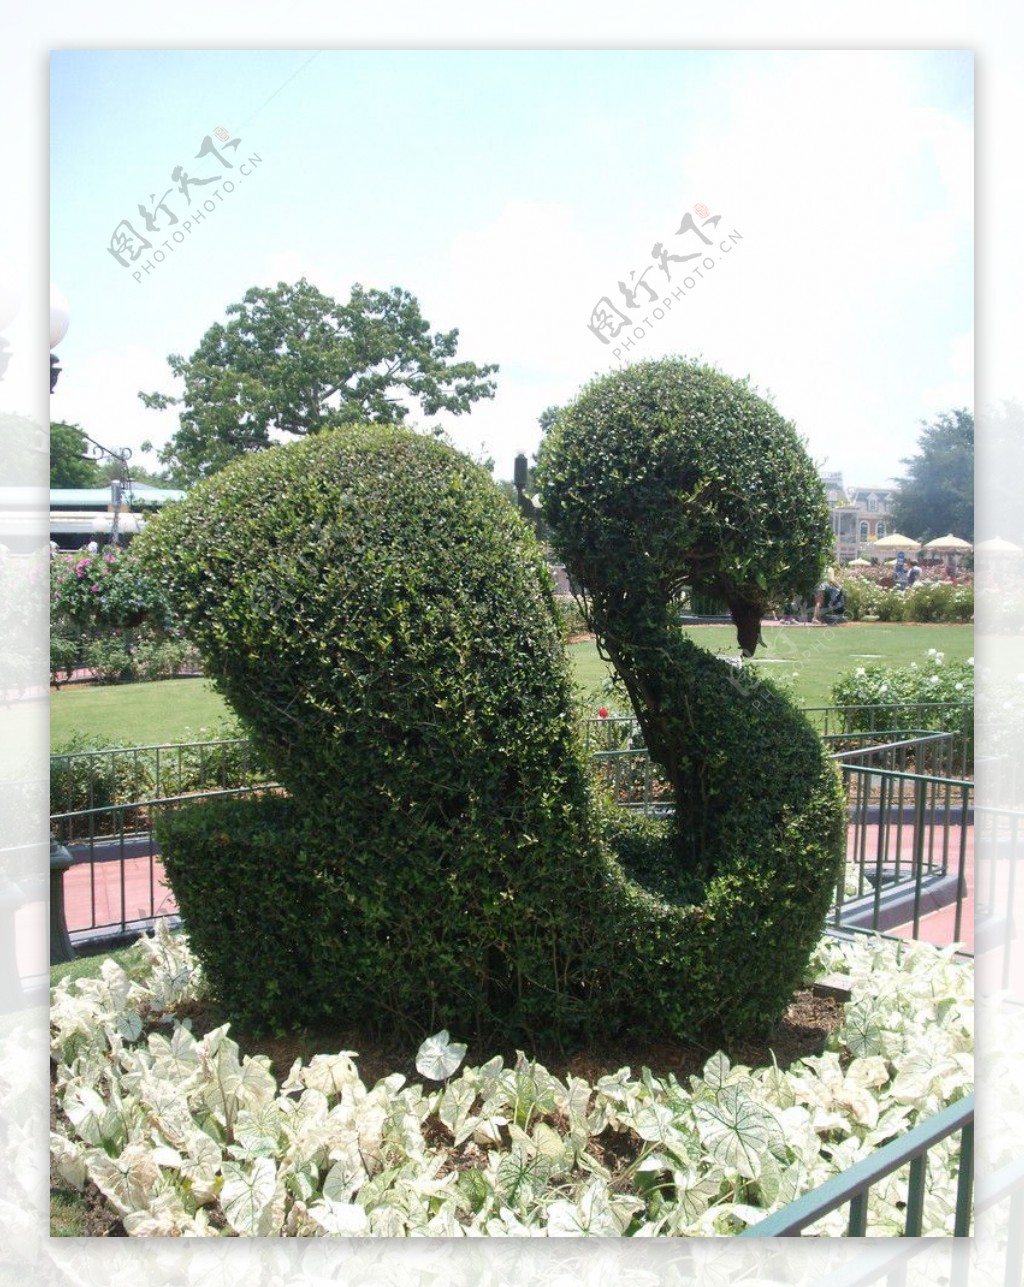 天鹅植物园艺植物雕塑造型公园图片